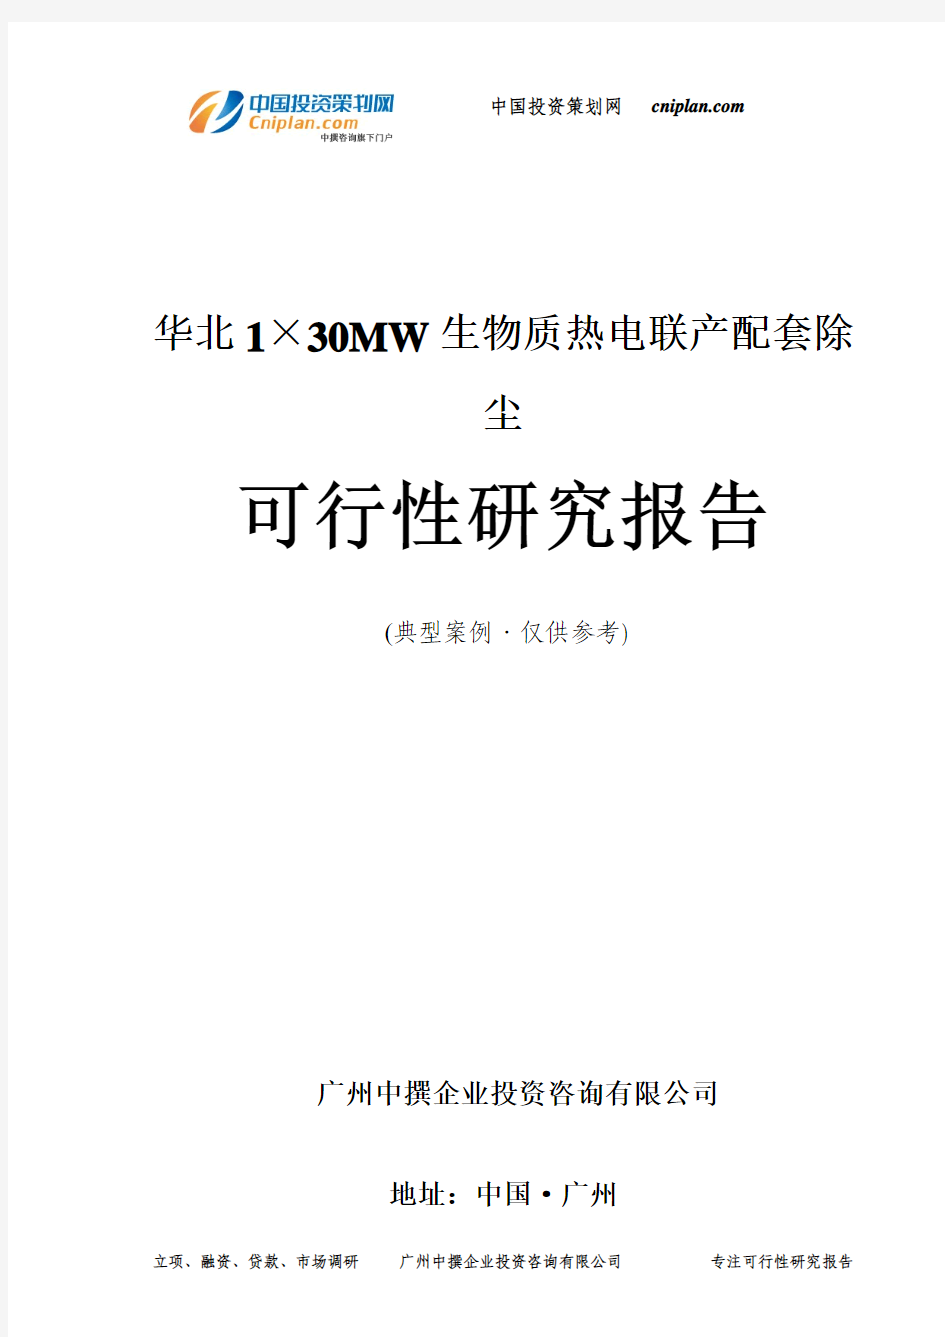 华北1×30MW生物质热电联产配套除尘可行性研究报告-广州中撰咨询